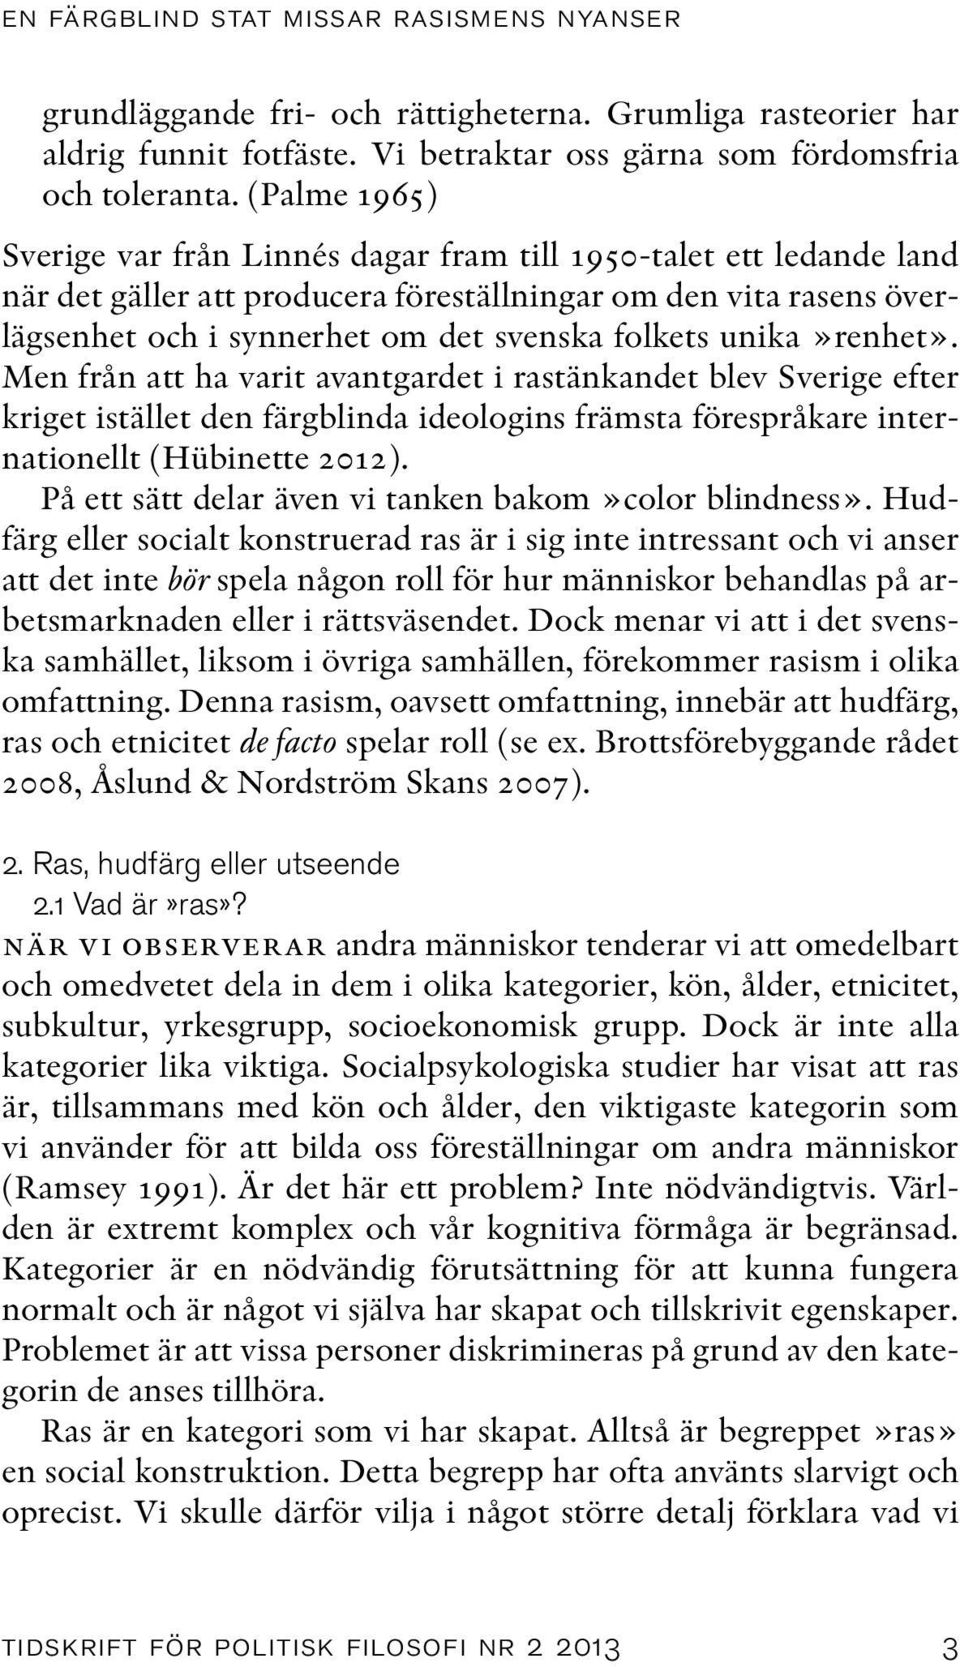 unika»renhet». Men från att ha varit avantgardet i rastänkandet blev Sverige efter kriget istället den färgblinda ideologins främsta förespråkare internationellt (Hübinette 2012).